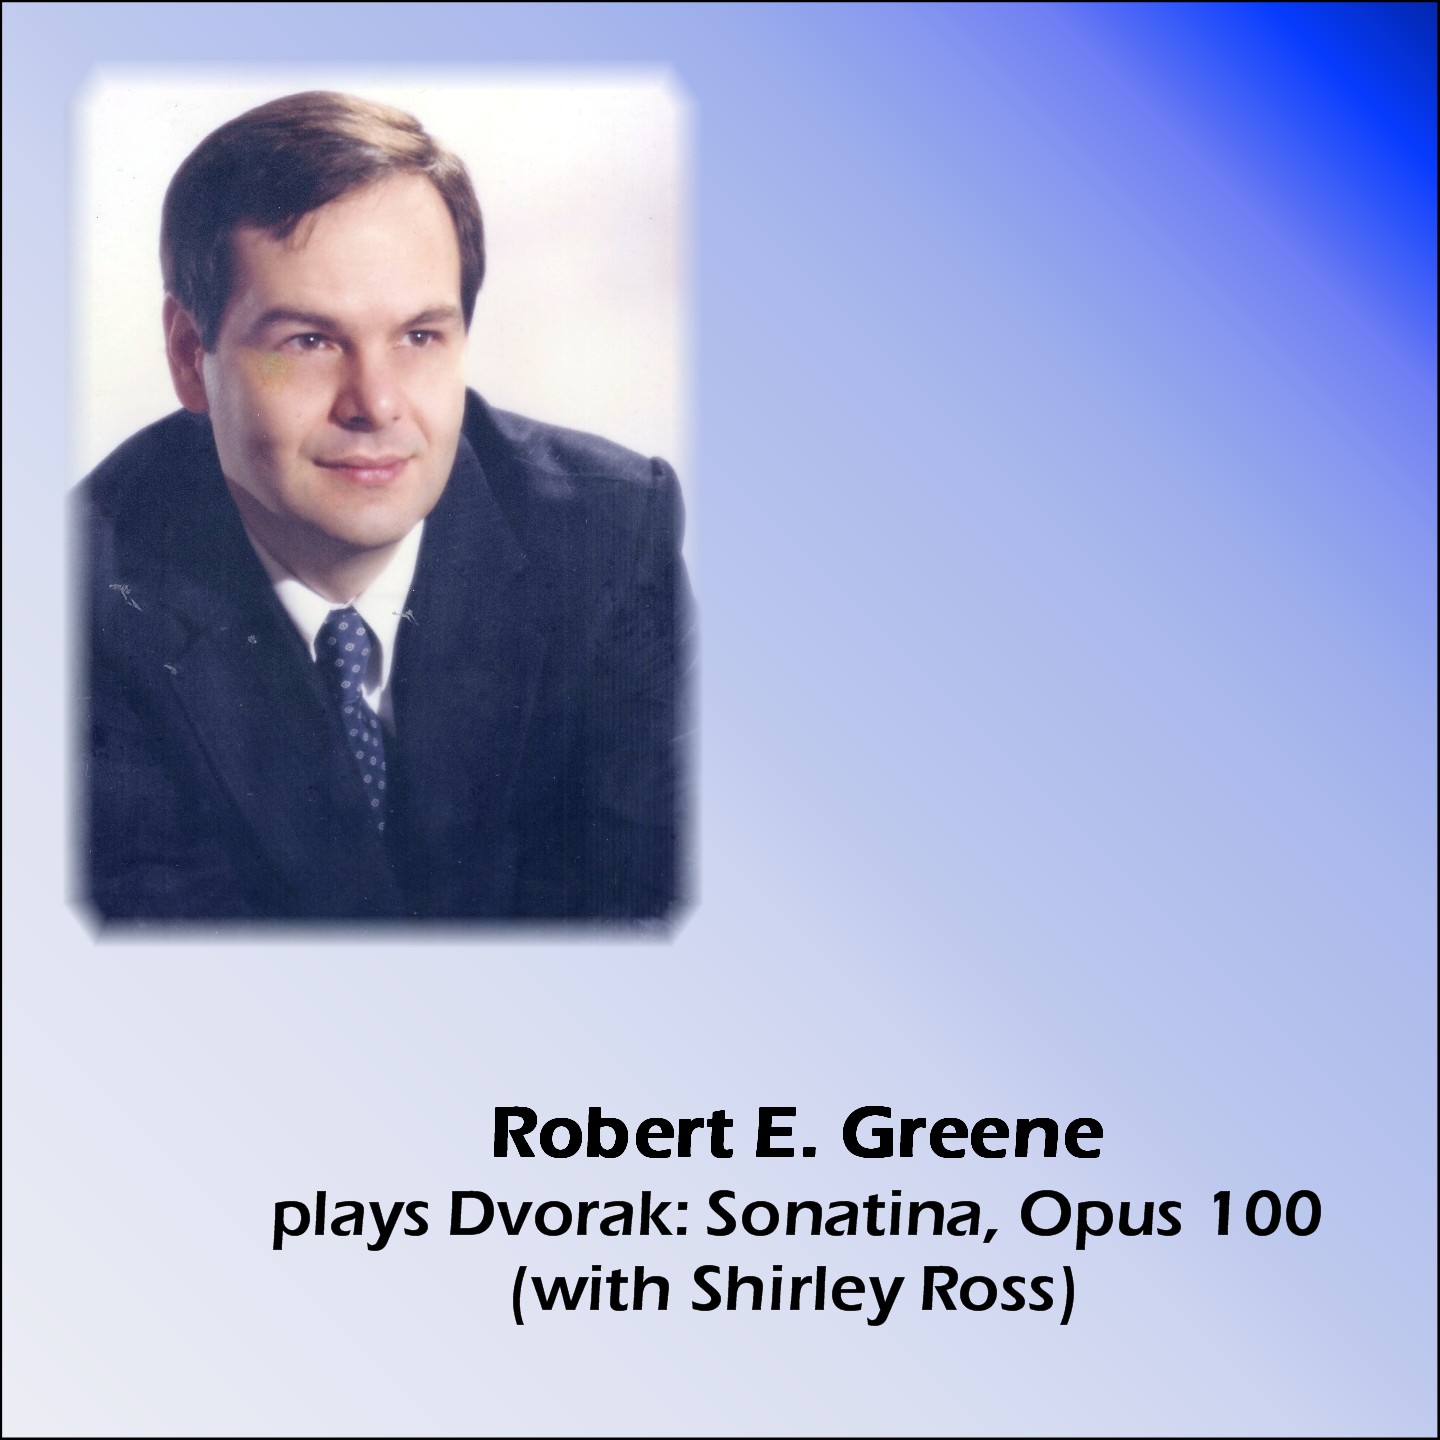 Robert E. Greene plays Dvorak